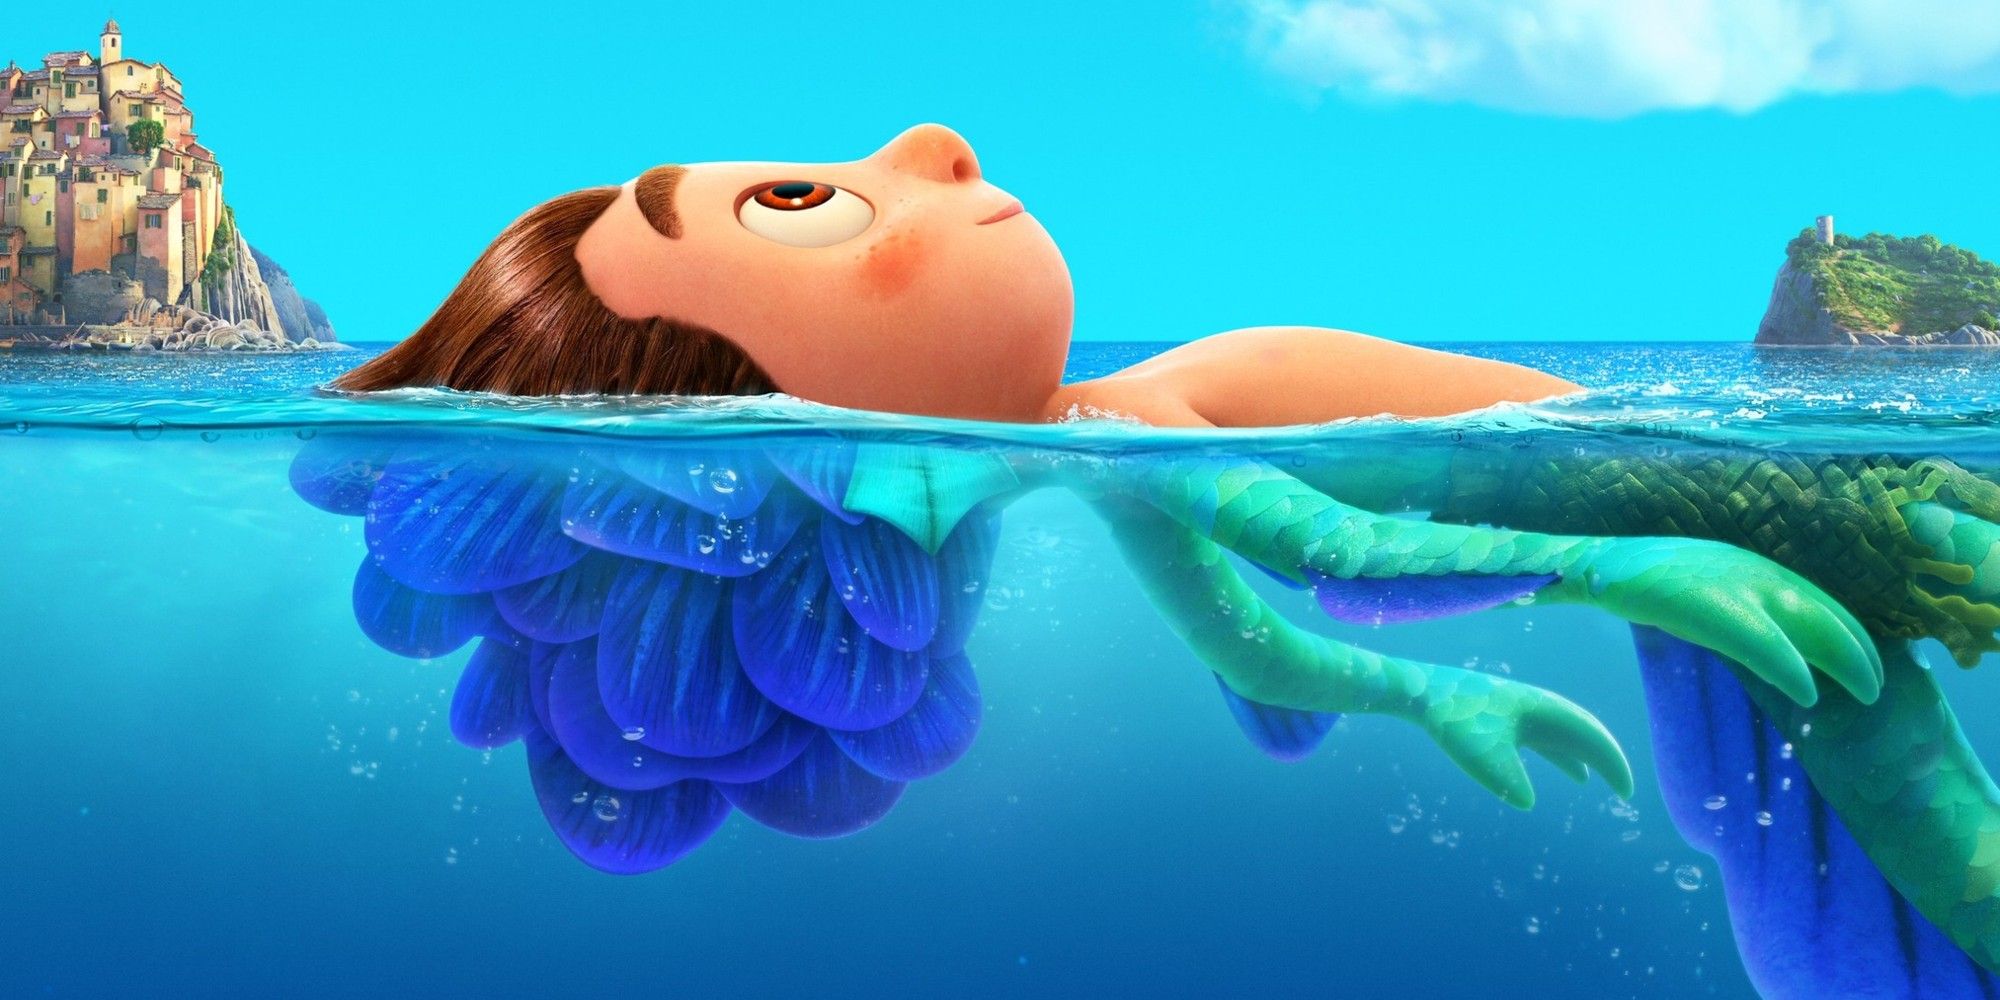 Luca Pixar Poster